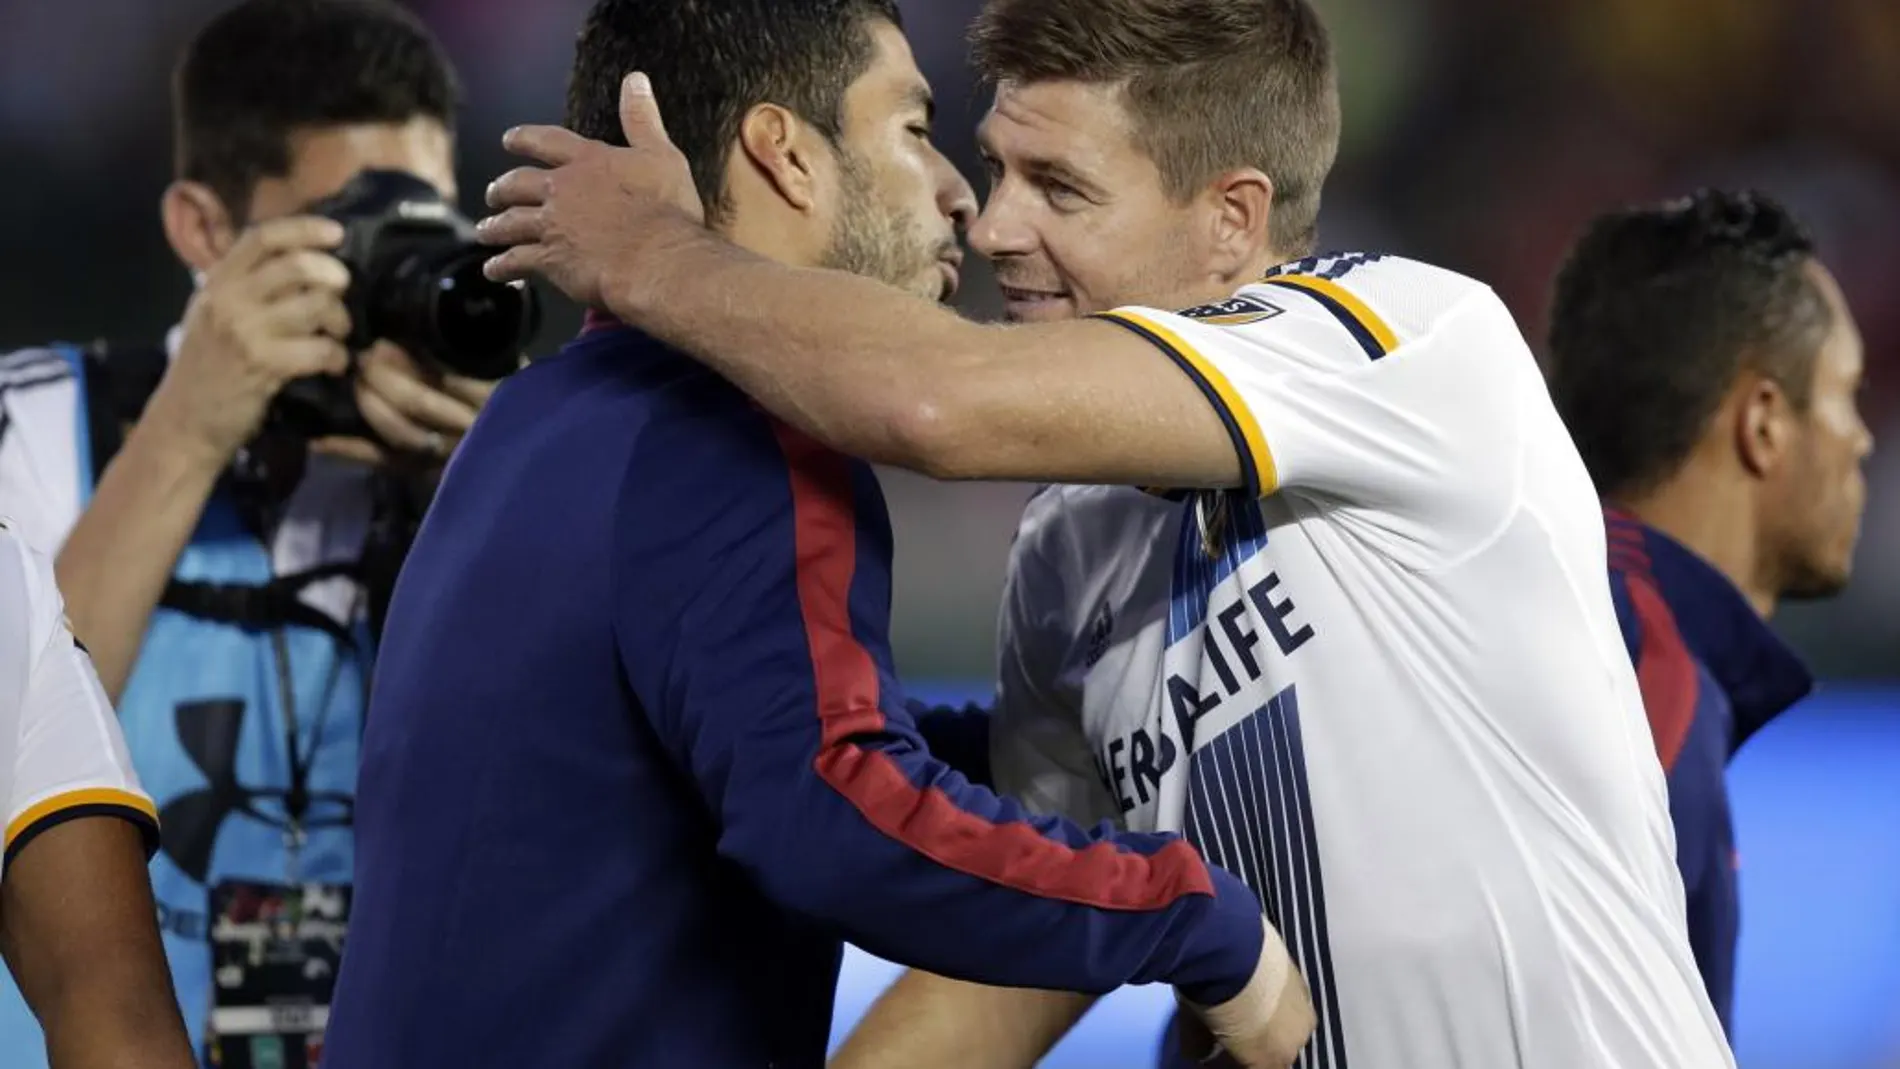 El jugador de Los Ángeles Galaxy' Steven Gerrard saluda al goleador azulgrana Luis Suárez tras el amistoso